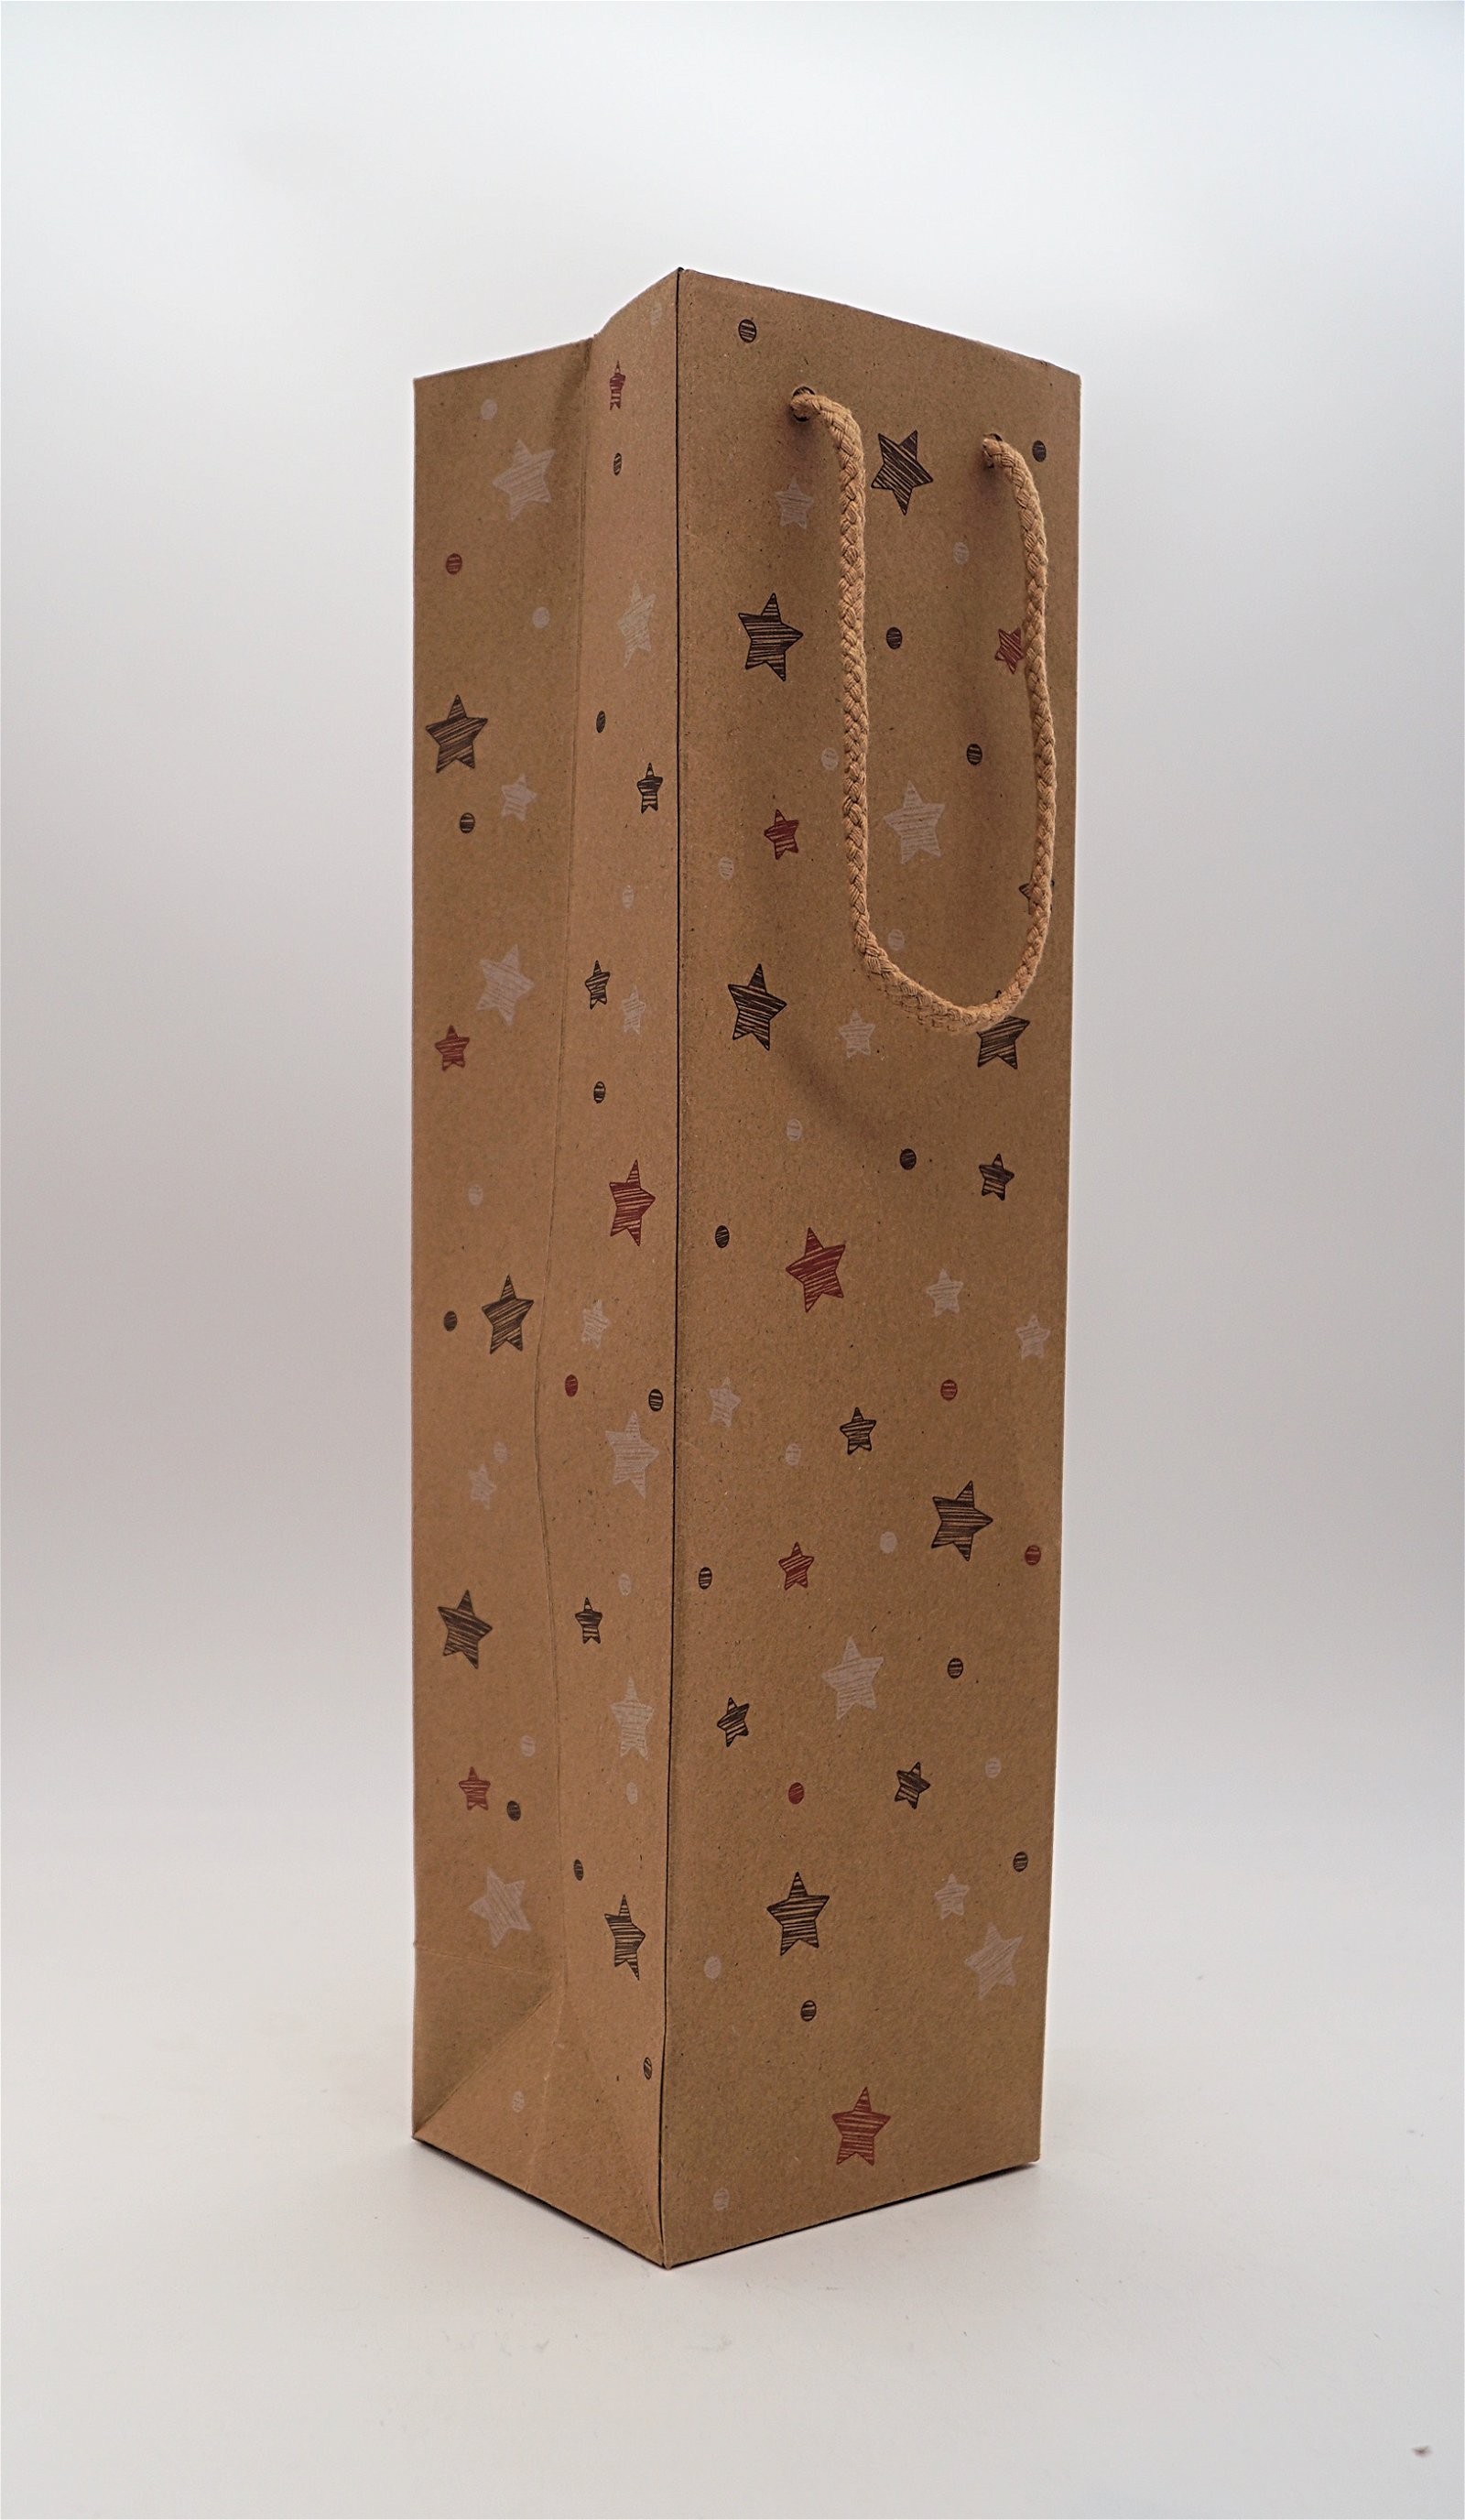 Der Schnapsstodl Weihnachtsgeschenktüte Braun bedruckt mit Sternen